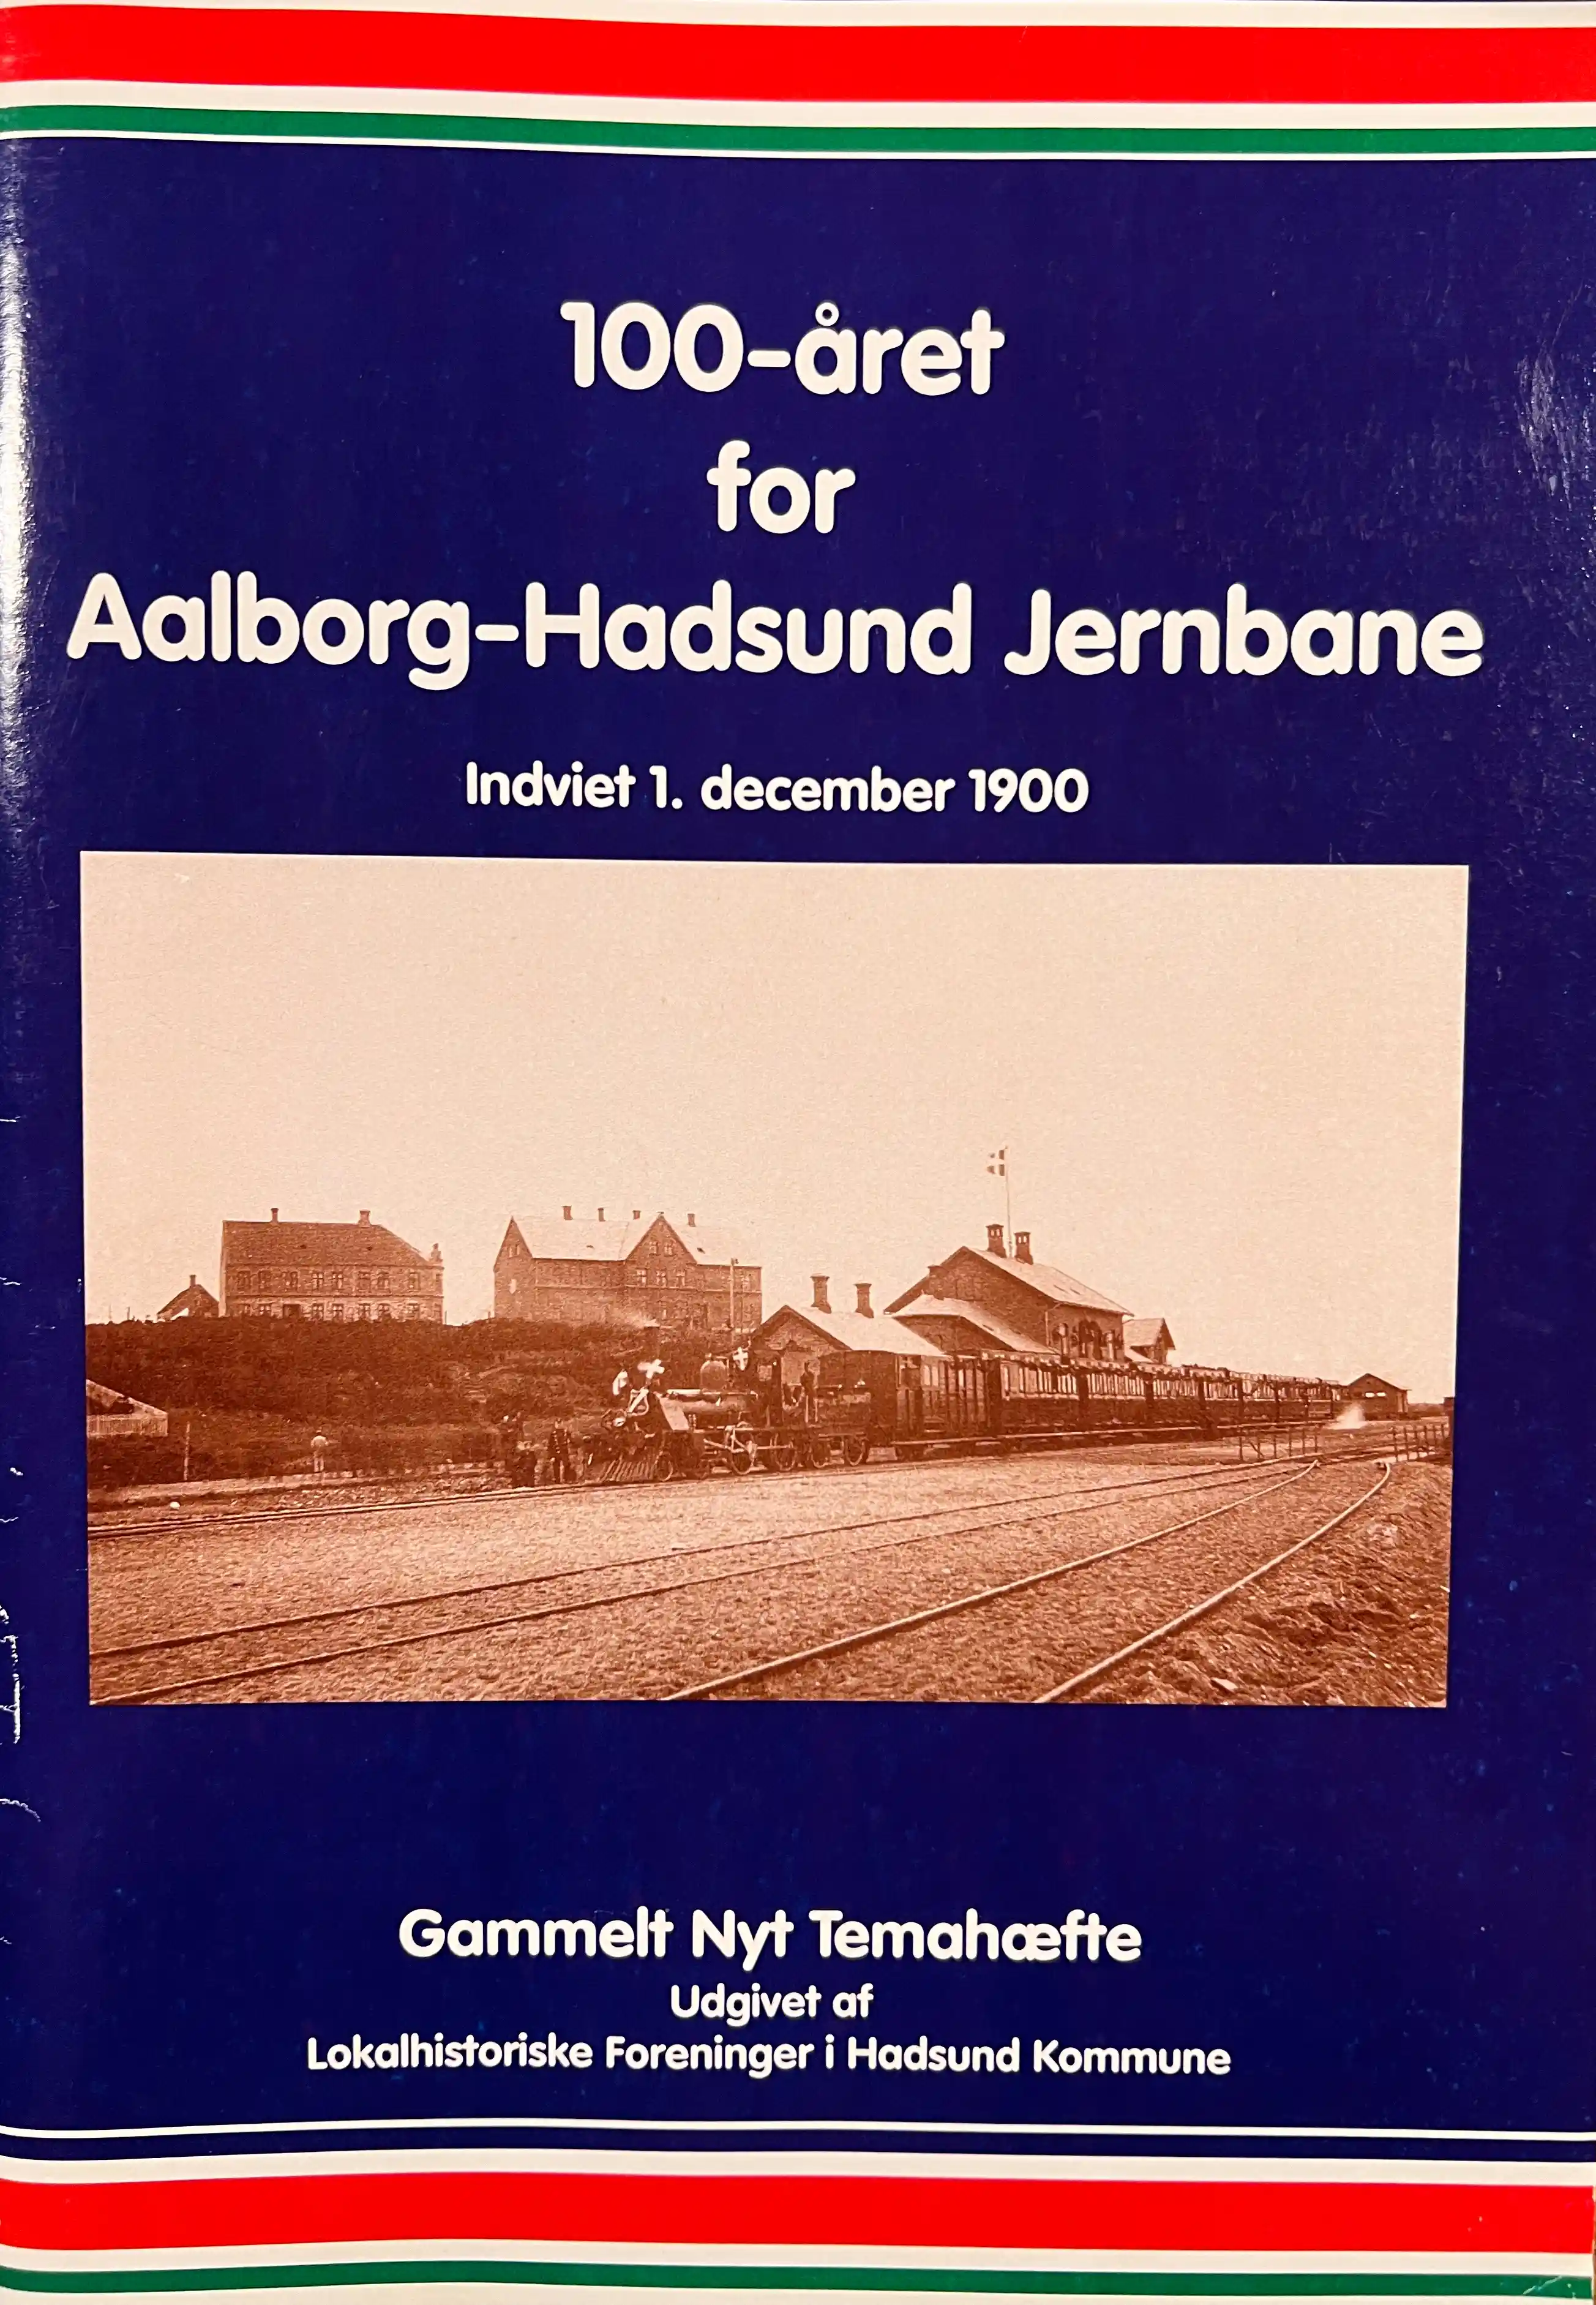 100-året for Aalborg-Hadsund Jernbane indviet 1. december 1900